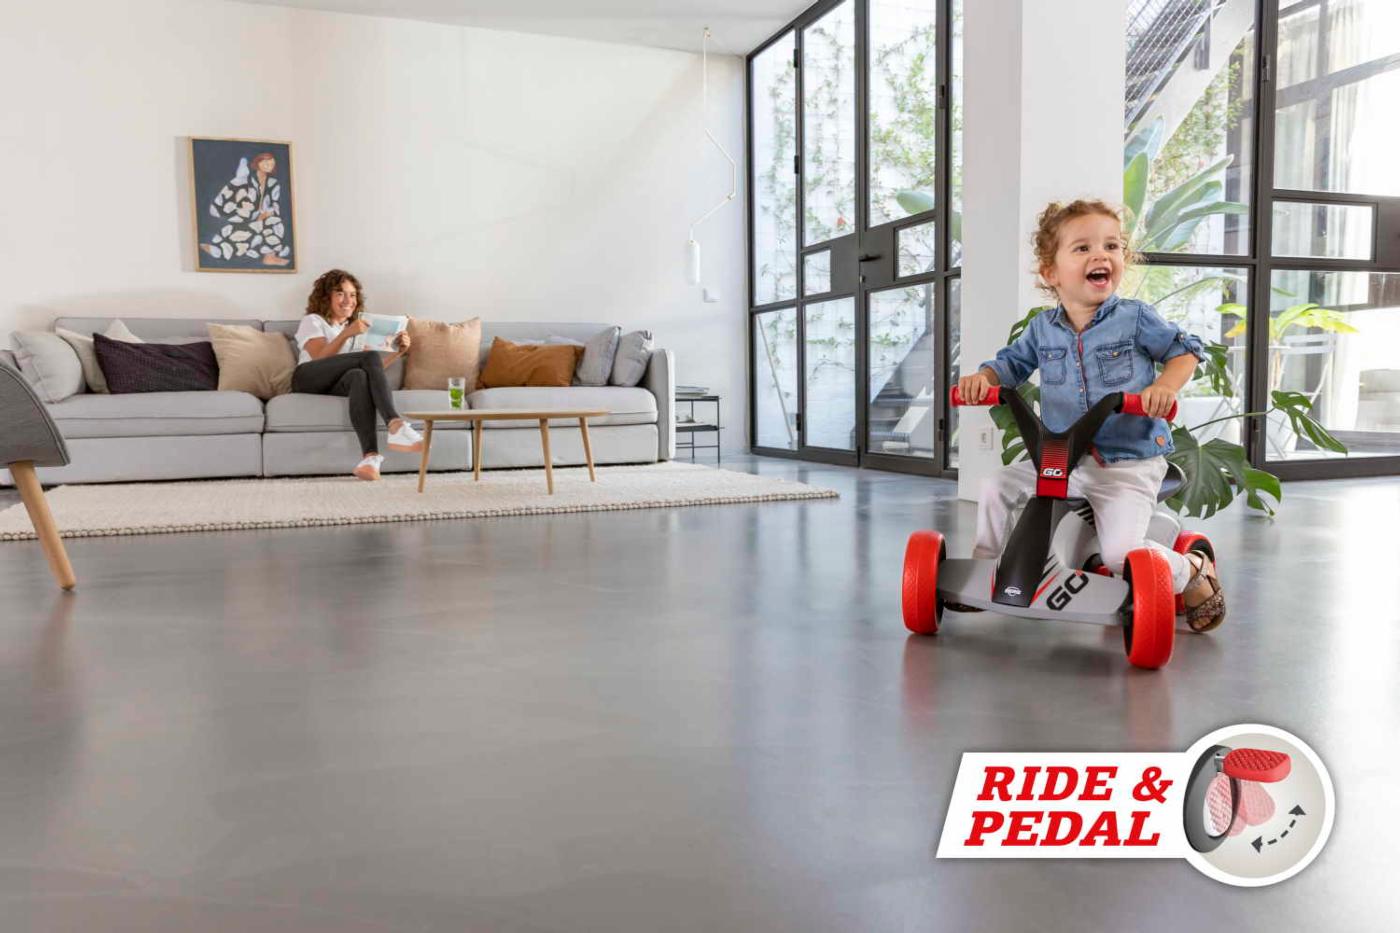 BERG GO² SparX Red caminhante evolutivo com carro de pedal